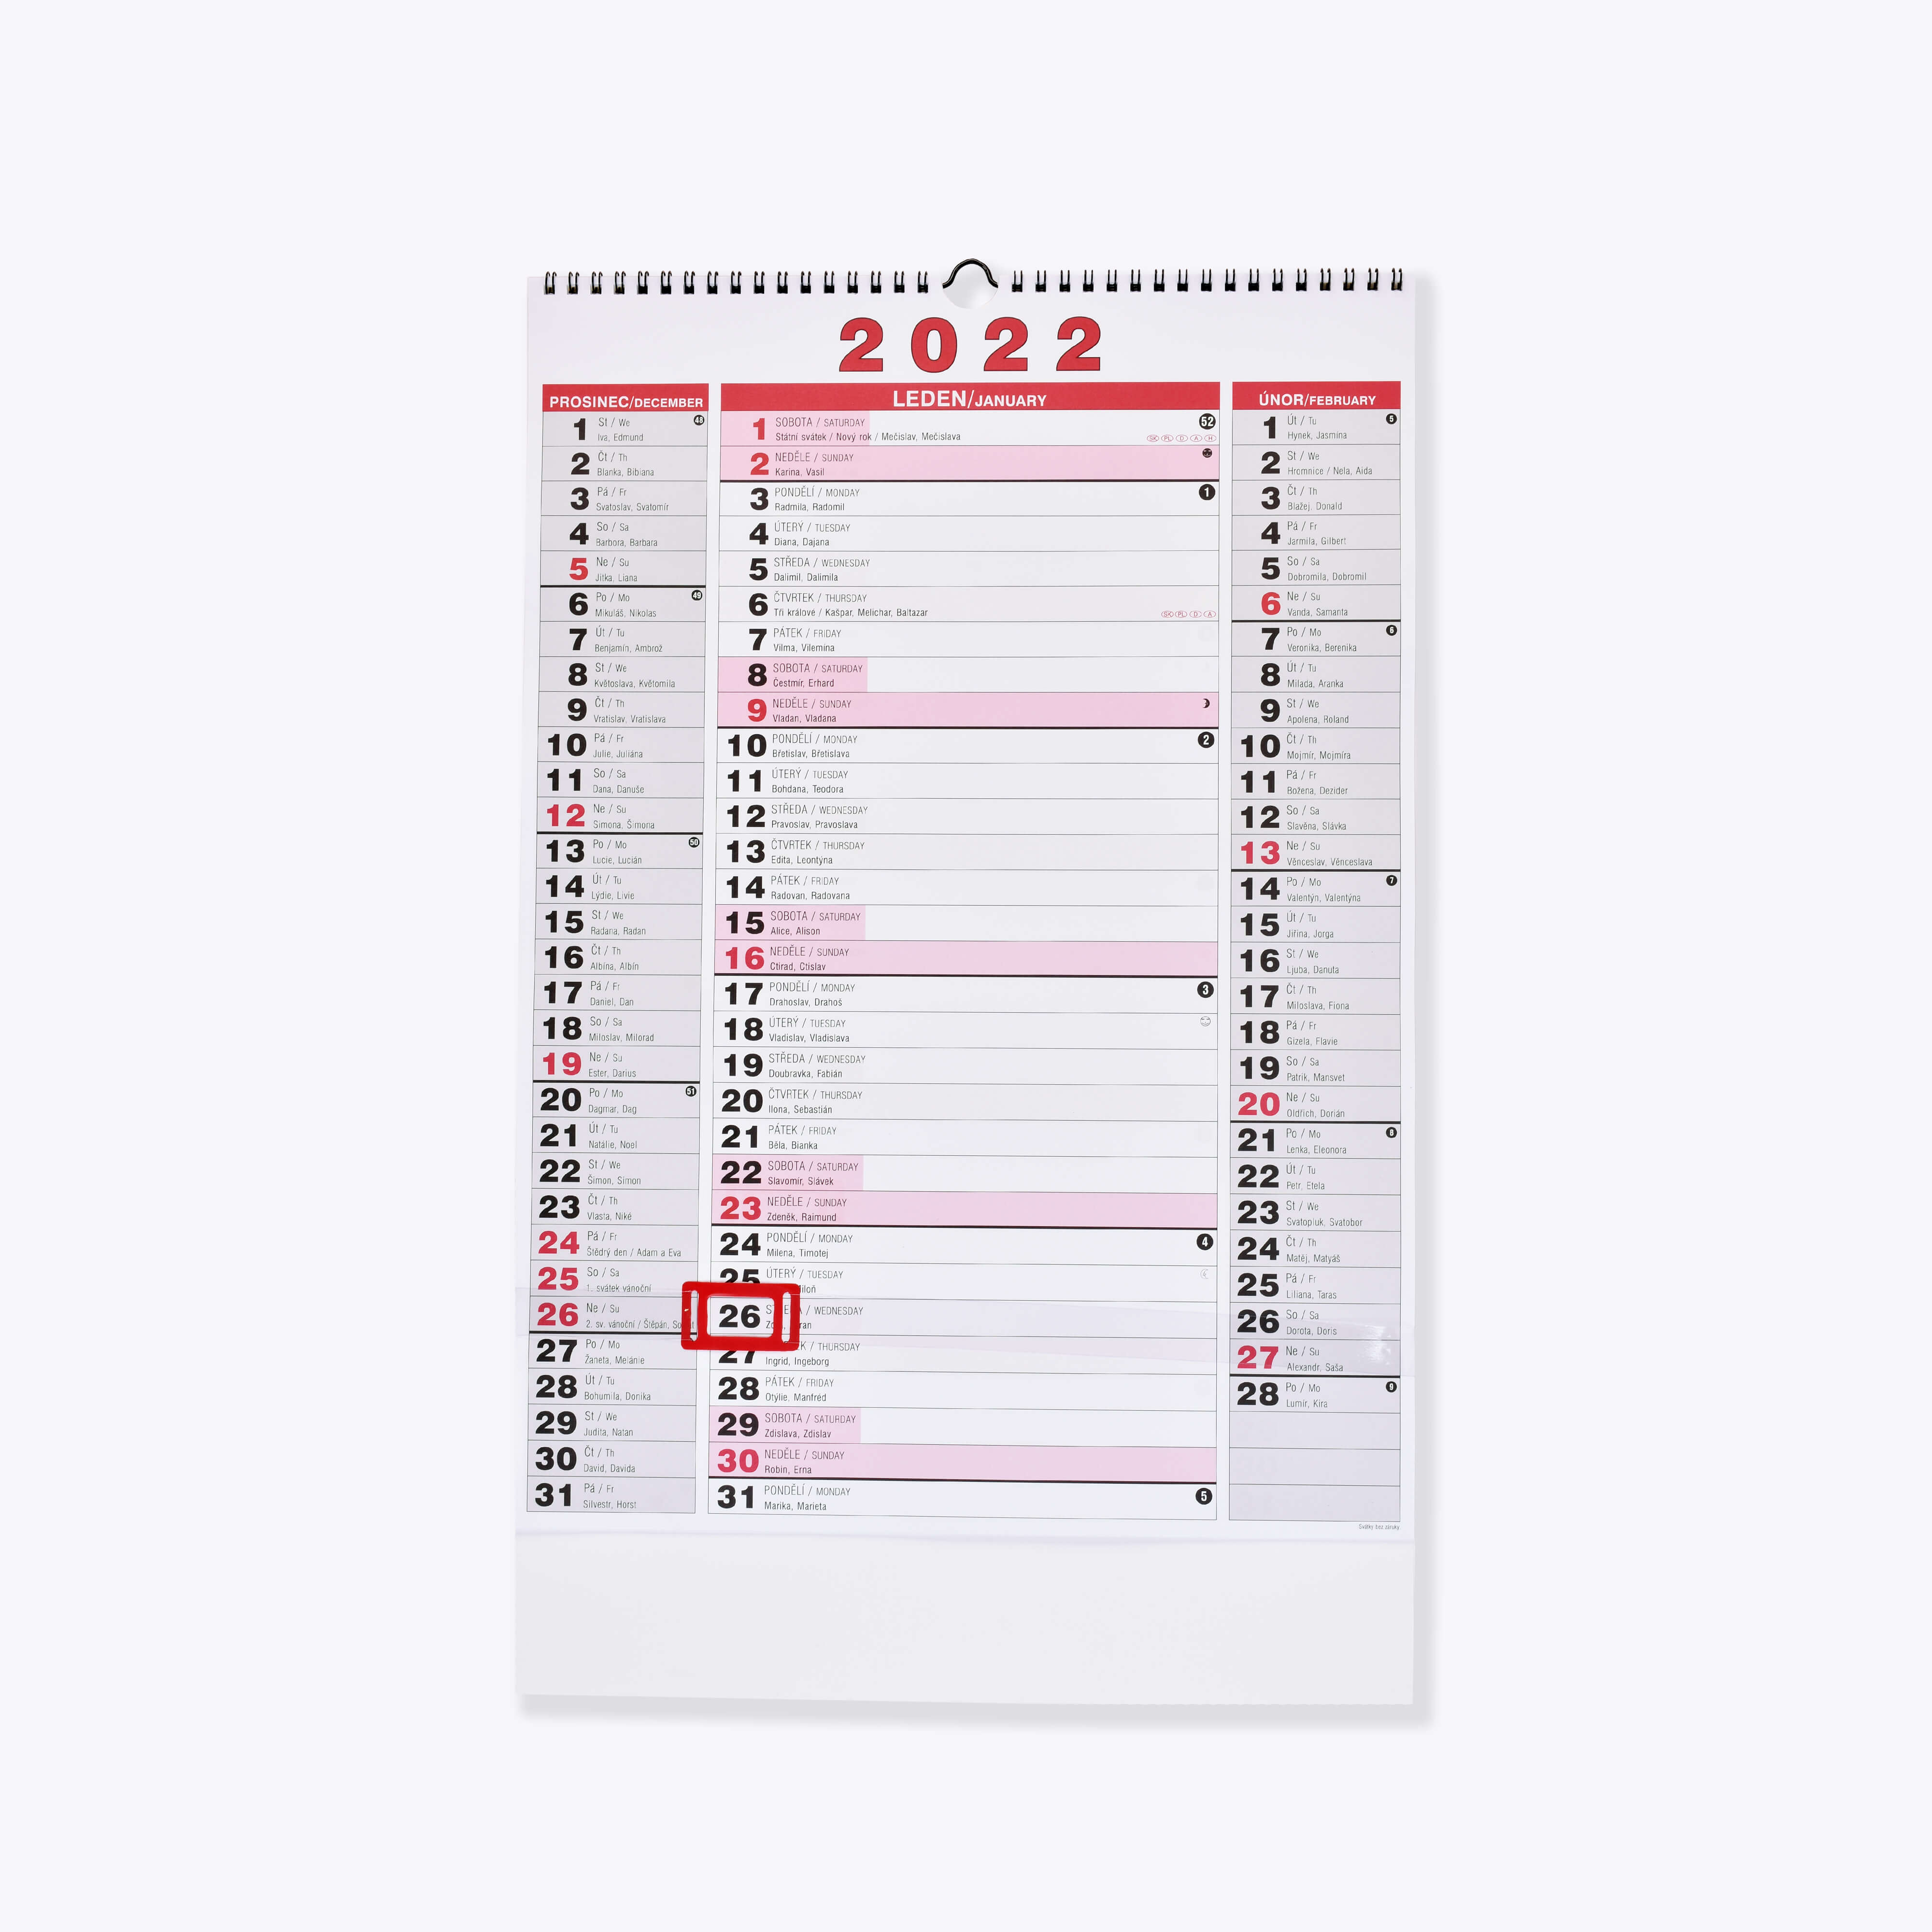 BOBO Nástěnný kalendář tříměsíční NEW 2022